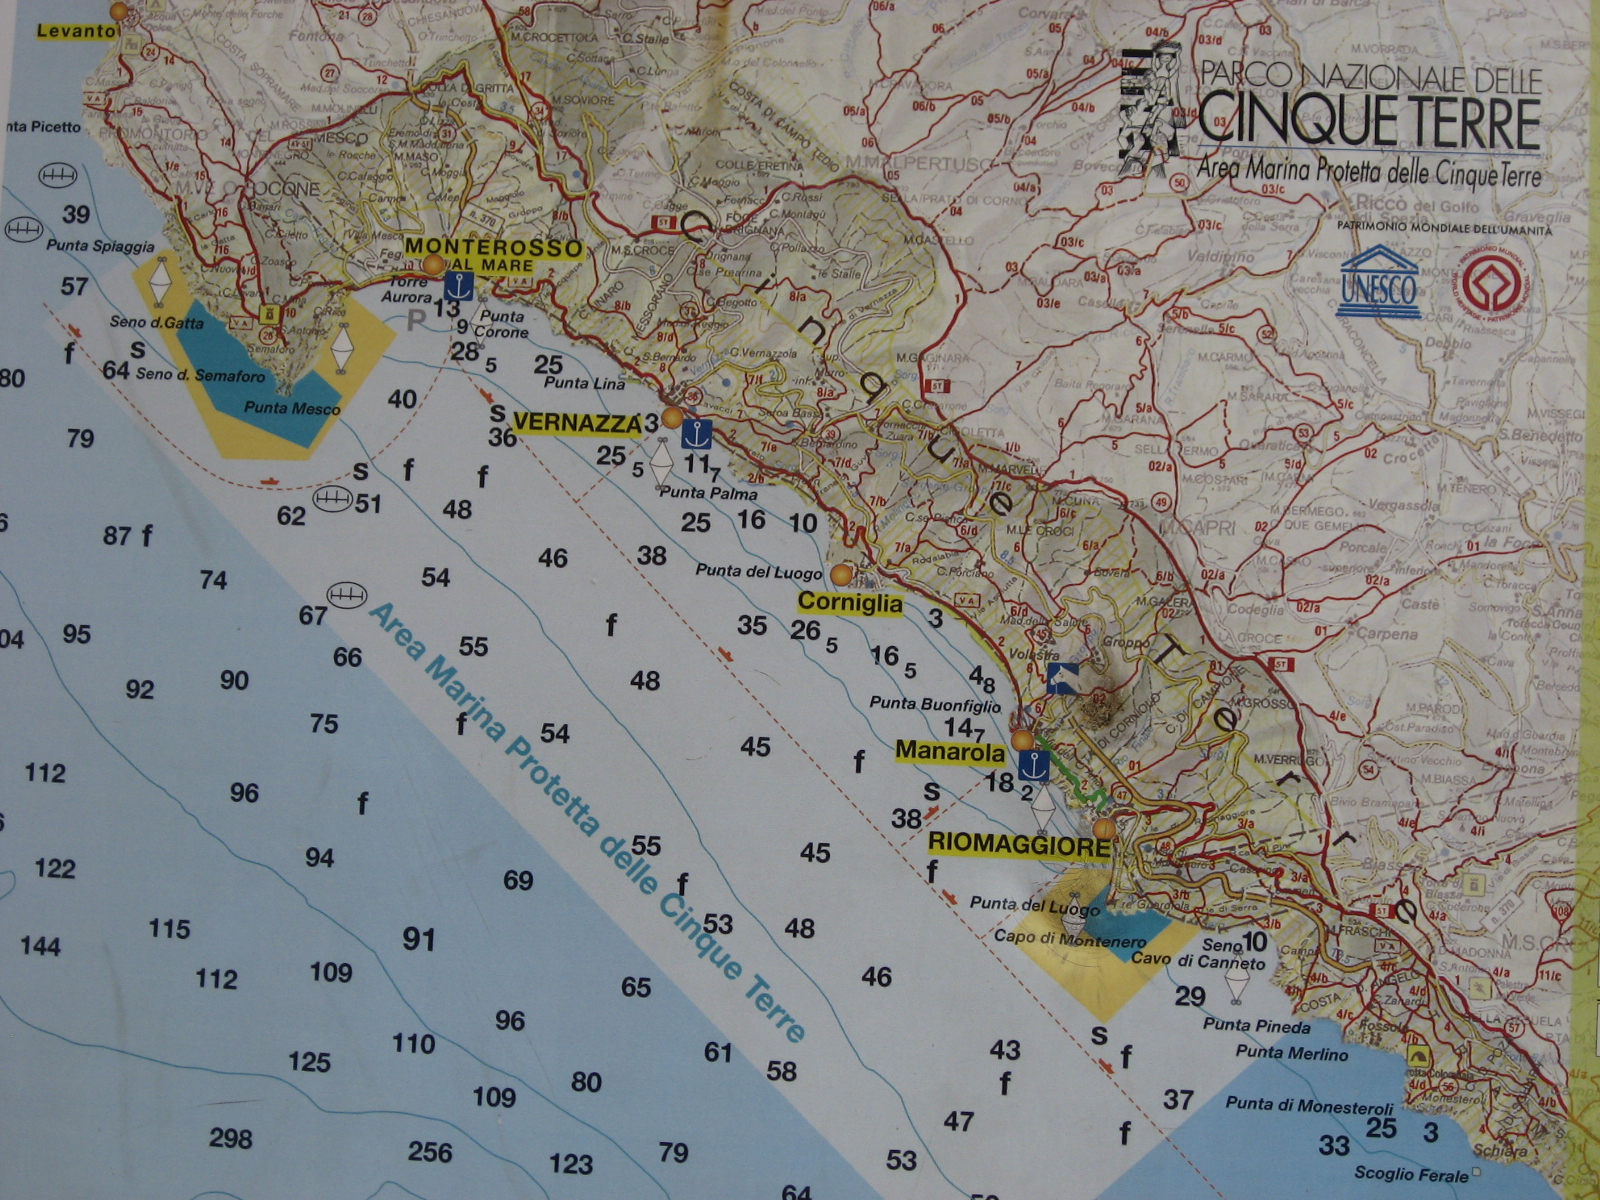 carte-de-l-italie-la-region-des-cinques-terre